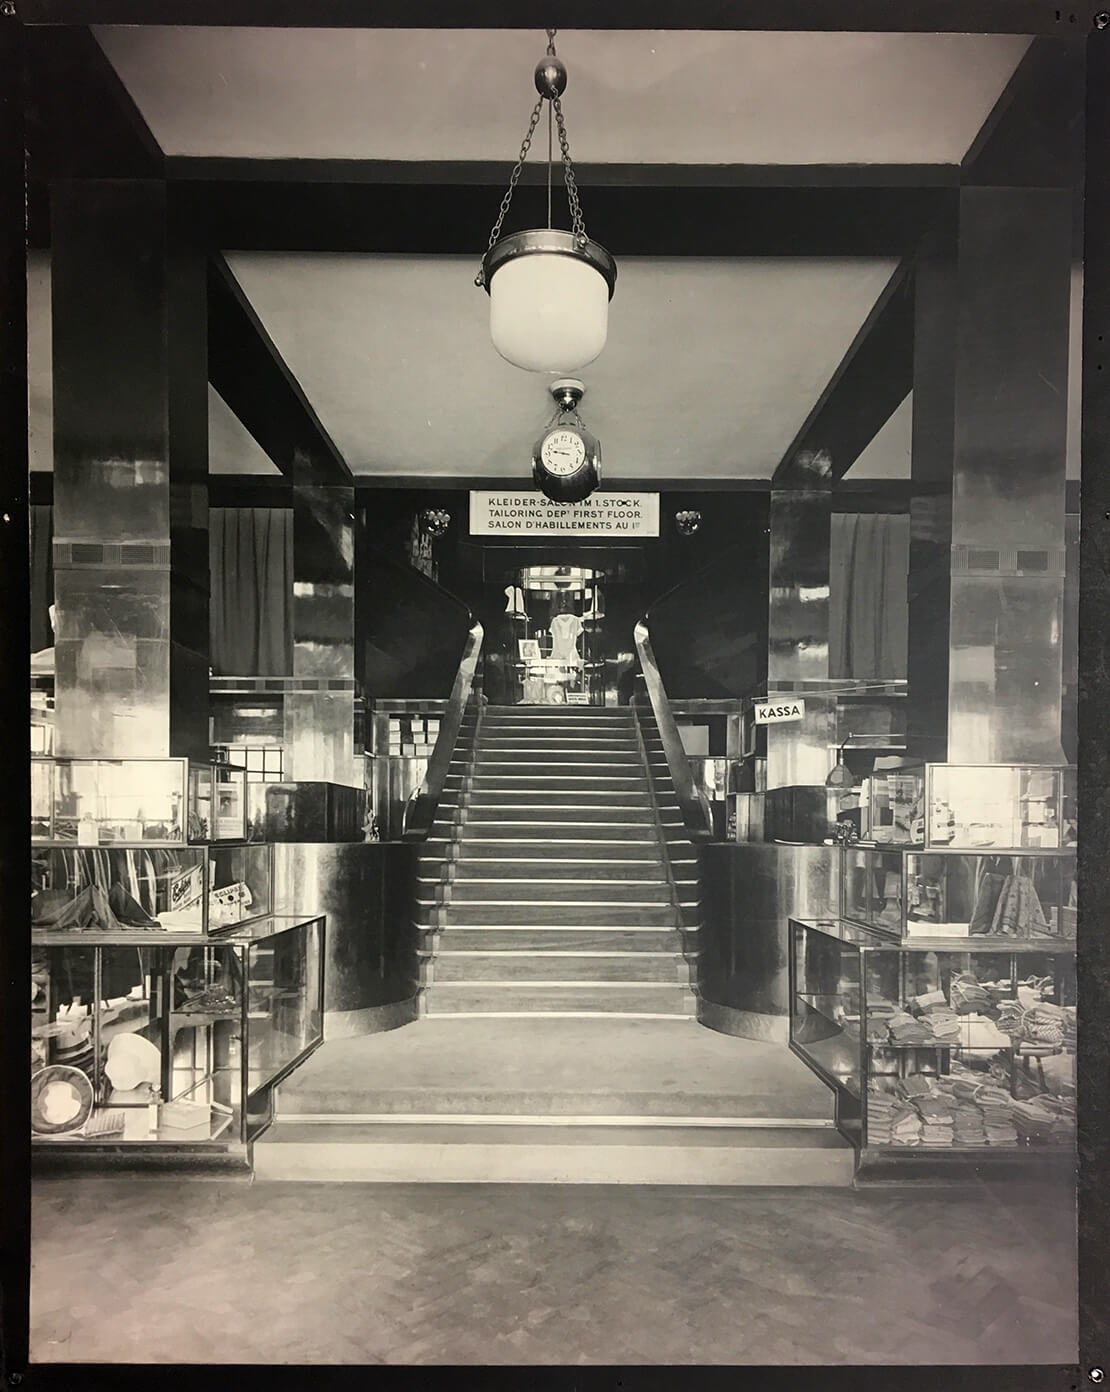 Wohn- und Geschäftshaus Goldman & Salatsch, Michaelerplatz, Treppe im Verkaufsraum (1909-11) Vergrößerung einer Fotografie von Martin Gerlach jun., Wien Museum 